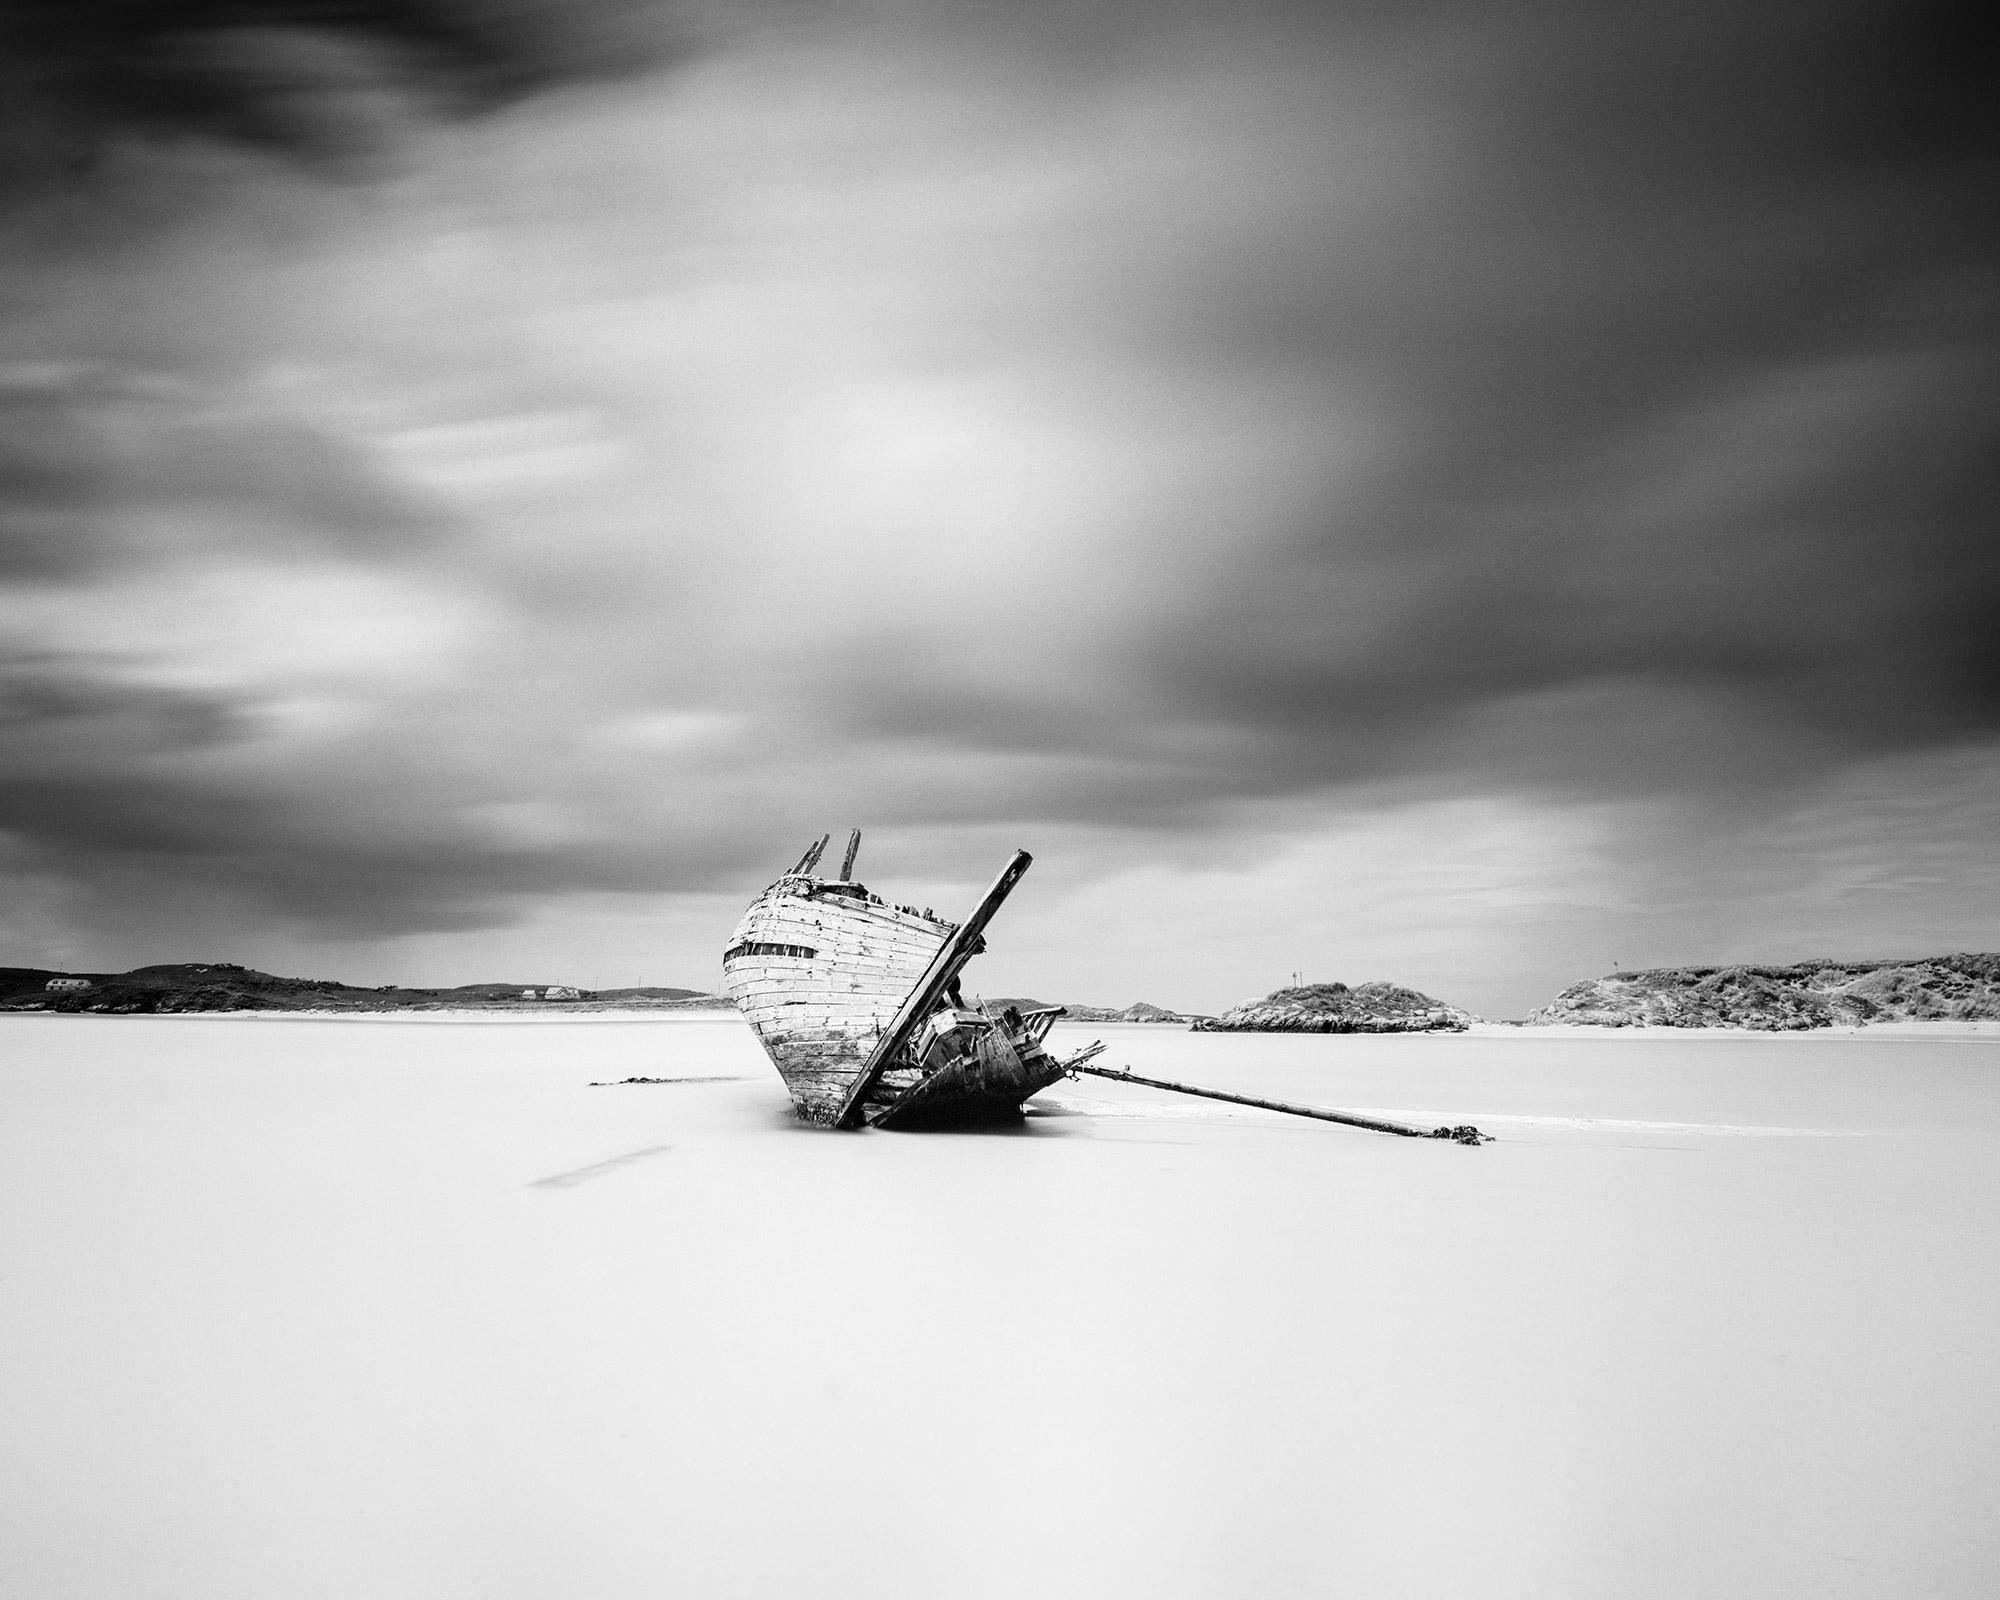 Bad Eddies Boat, Ireland, minimalist black and white art photography, landscape